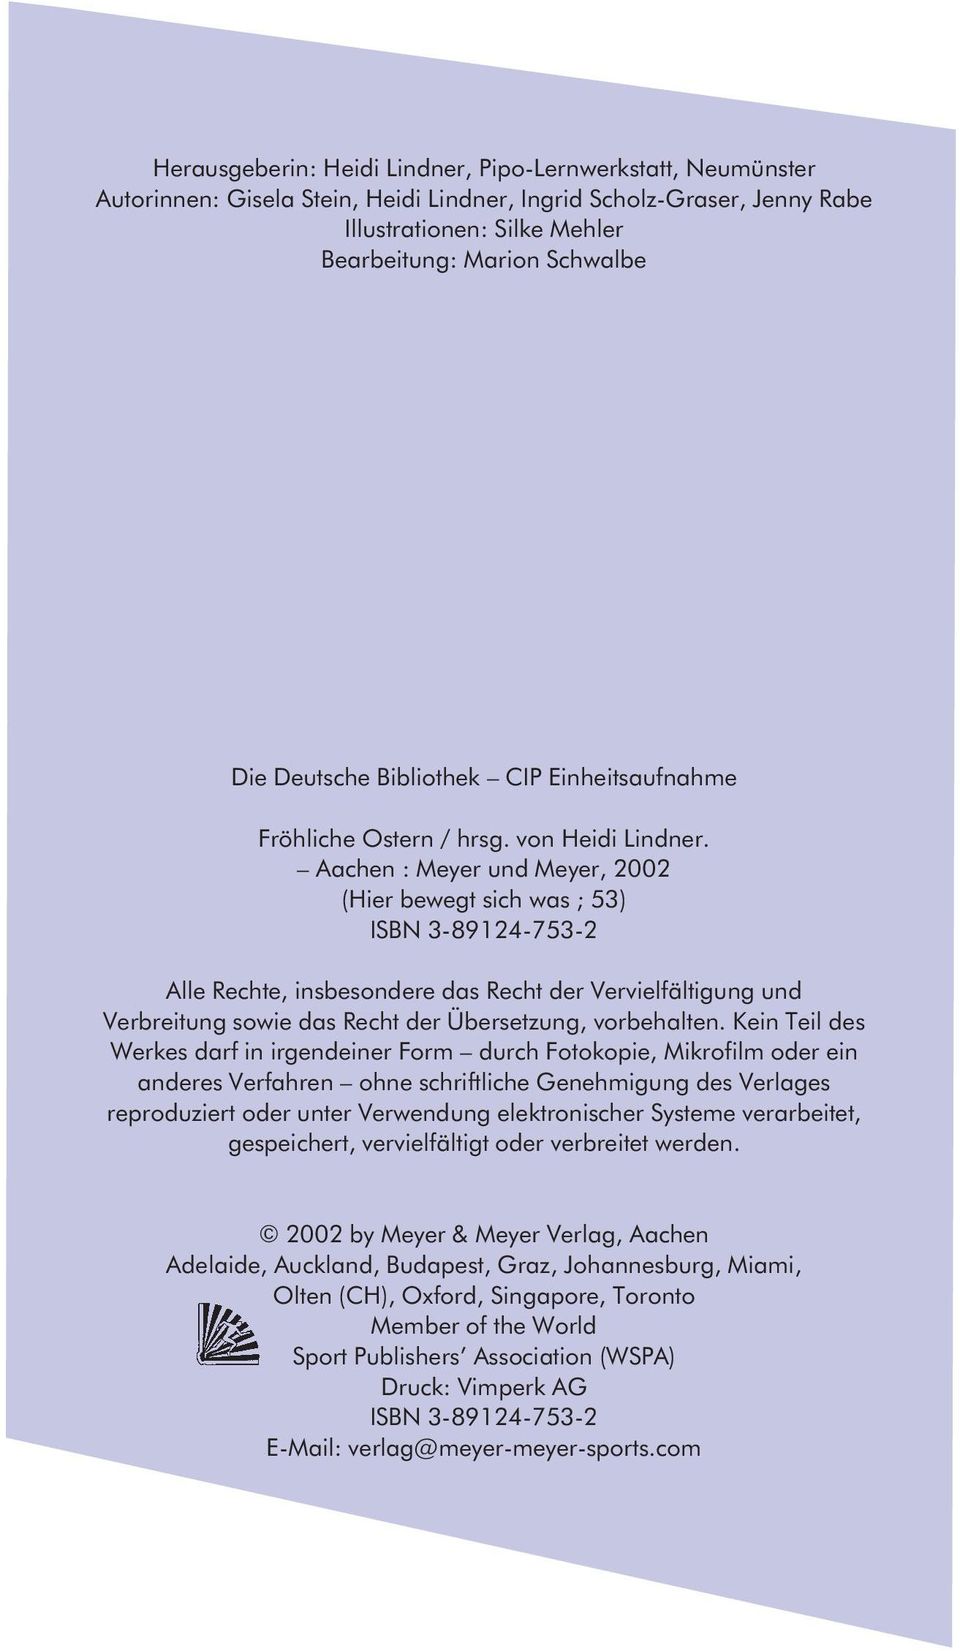 Aachen : Meyer und Meyer, 2002 (Hier bewegt sich was ; 53) ISBN 3-89124-753-2 Alle Rechte, insbesondere das Recht der Vervielfältigung und Verbreitung sowie das Recht der Übersetzung, vorbehalten.